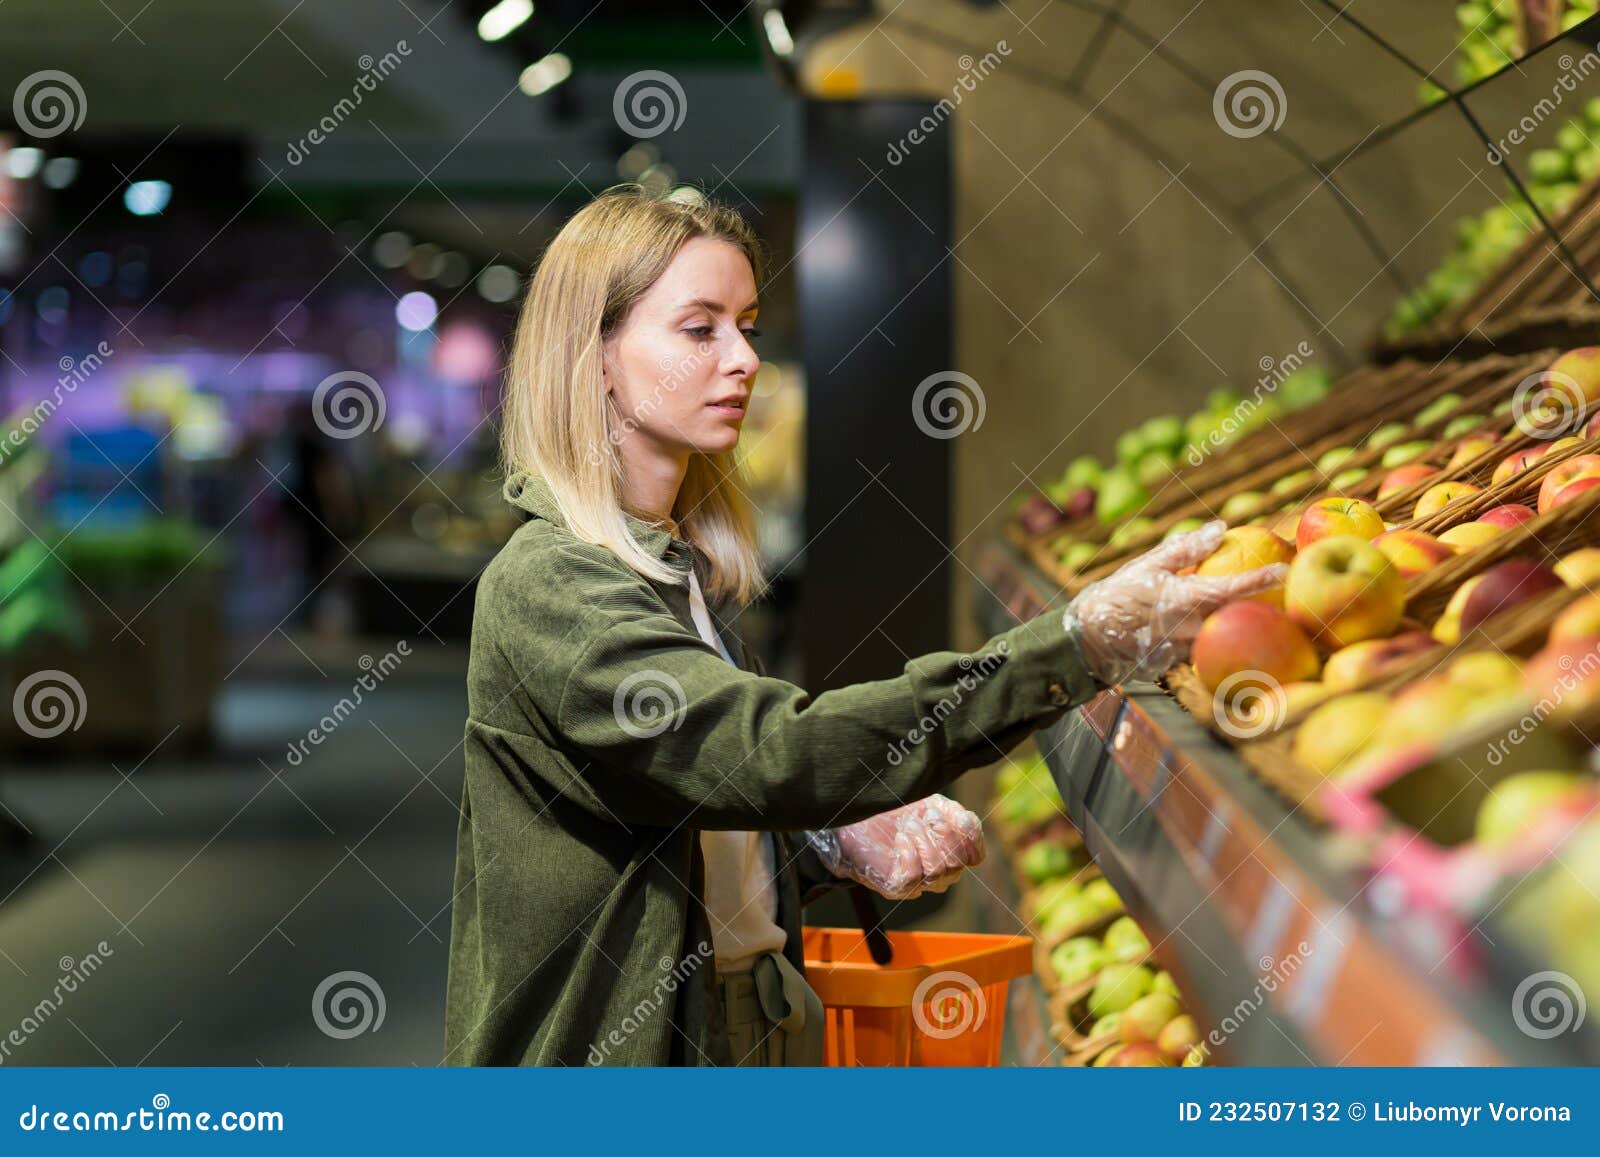 Una Joven Rubia Elige Frutas Verduras En El Mostrador Del Supermercado imagen